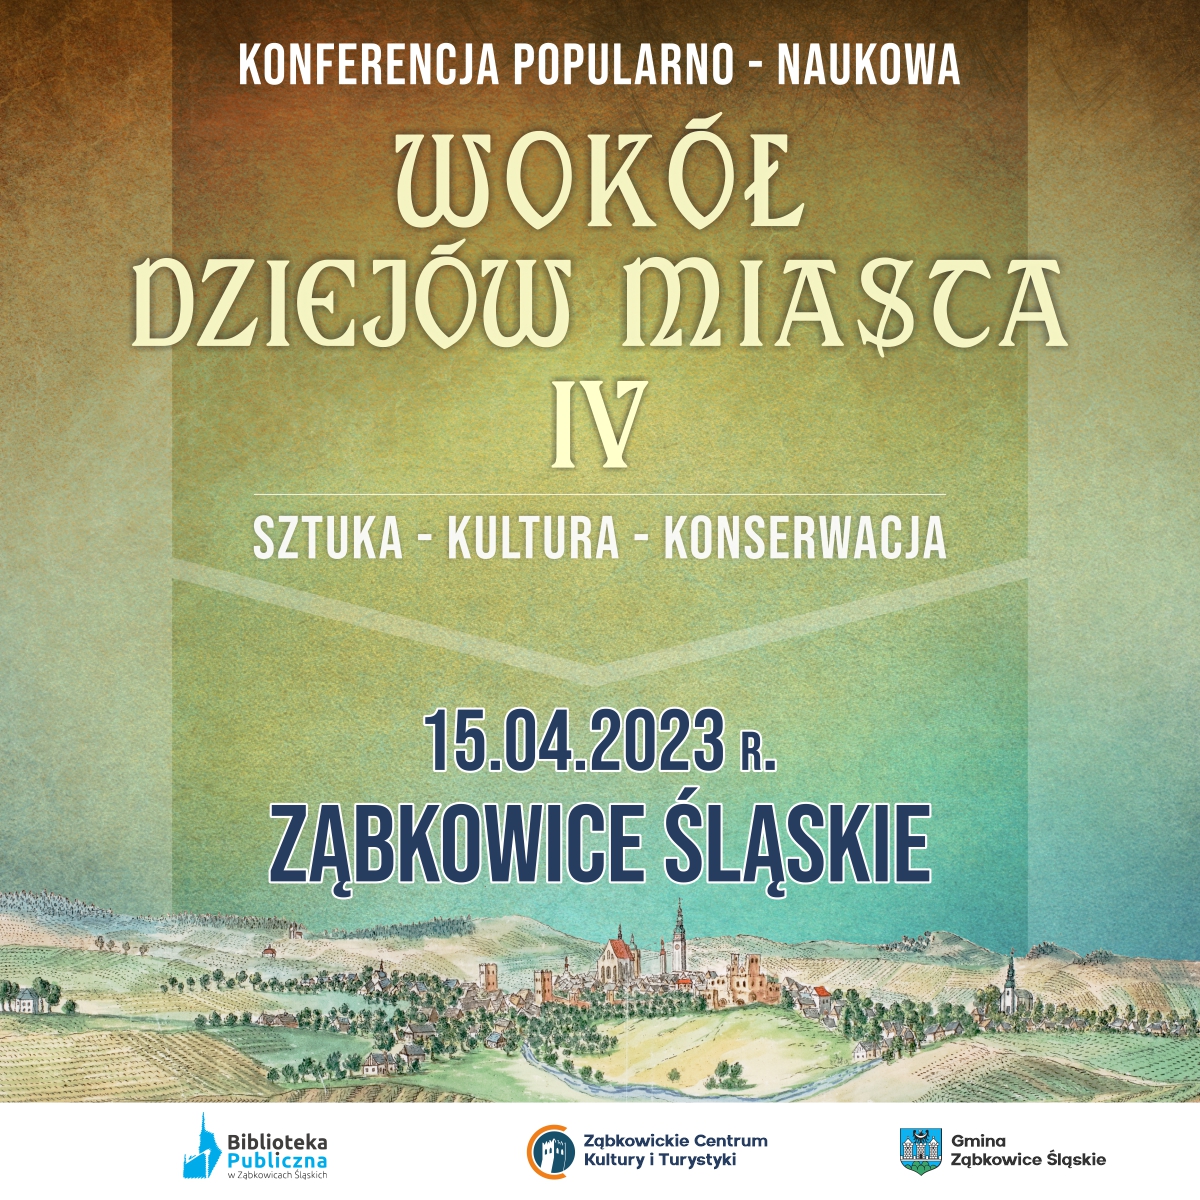 Plakat informujący o konferencji naukowej "Wokół dziejów miasta IV." 15 kwietnia 2023 na rynku w Ząbkowicach Śląskich.